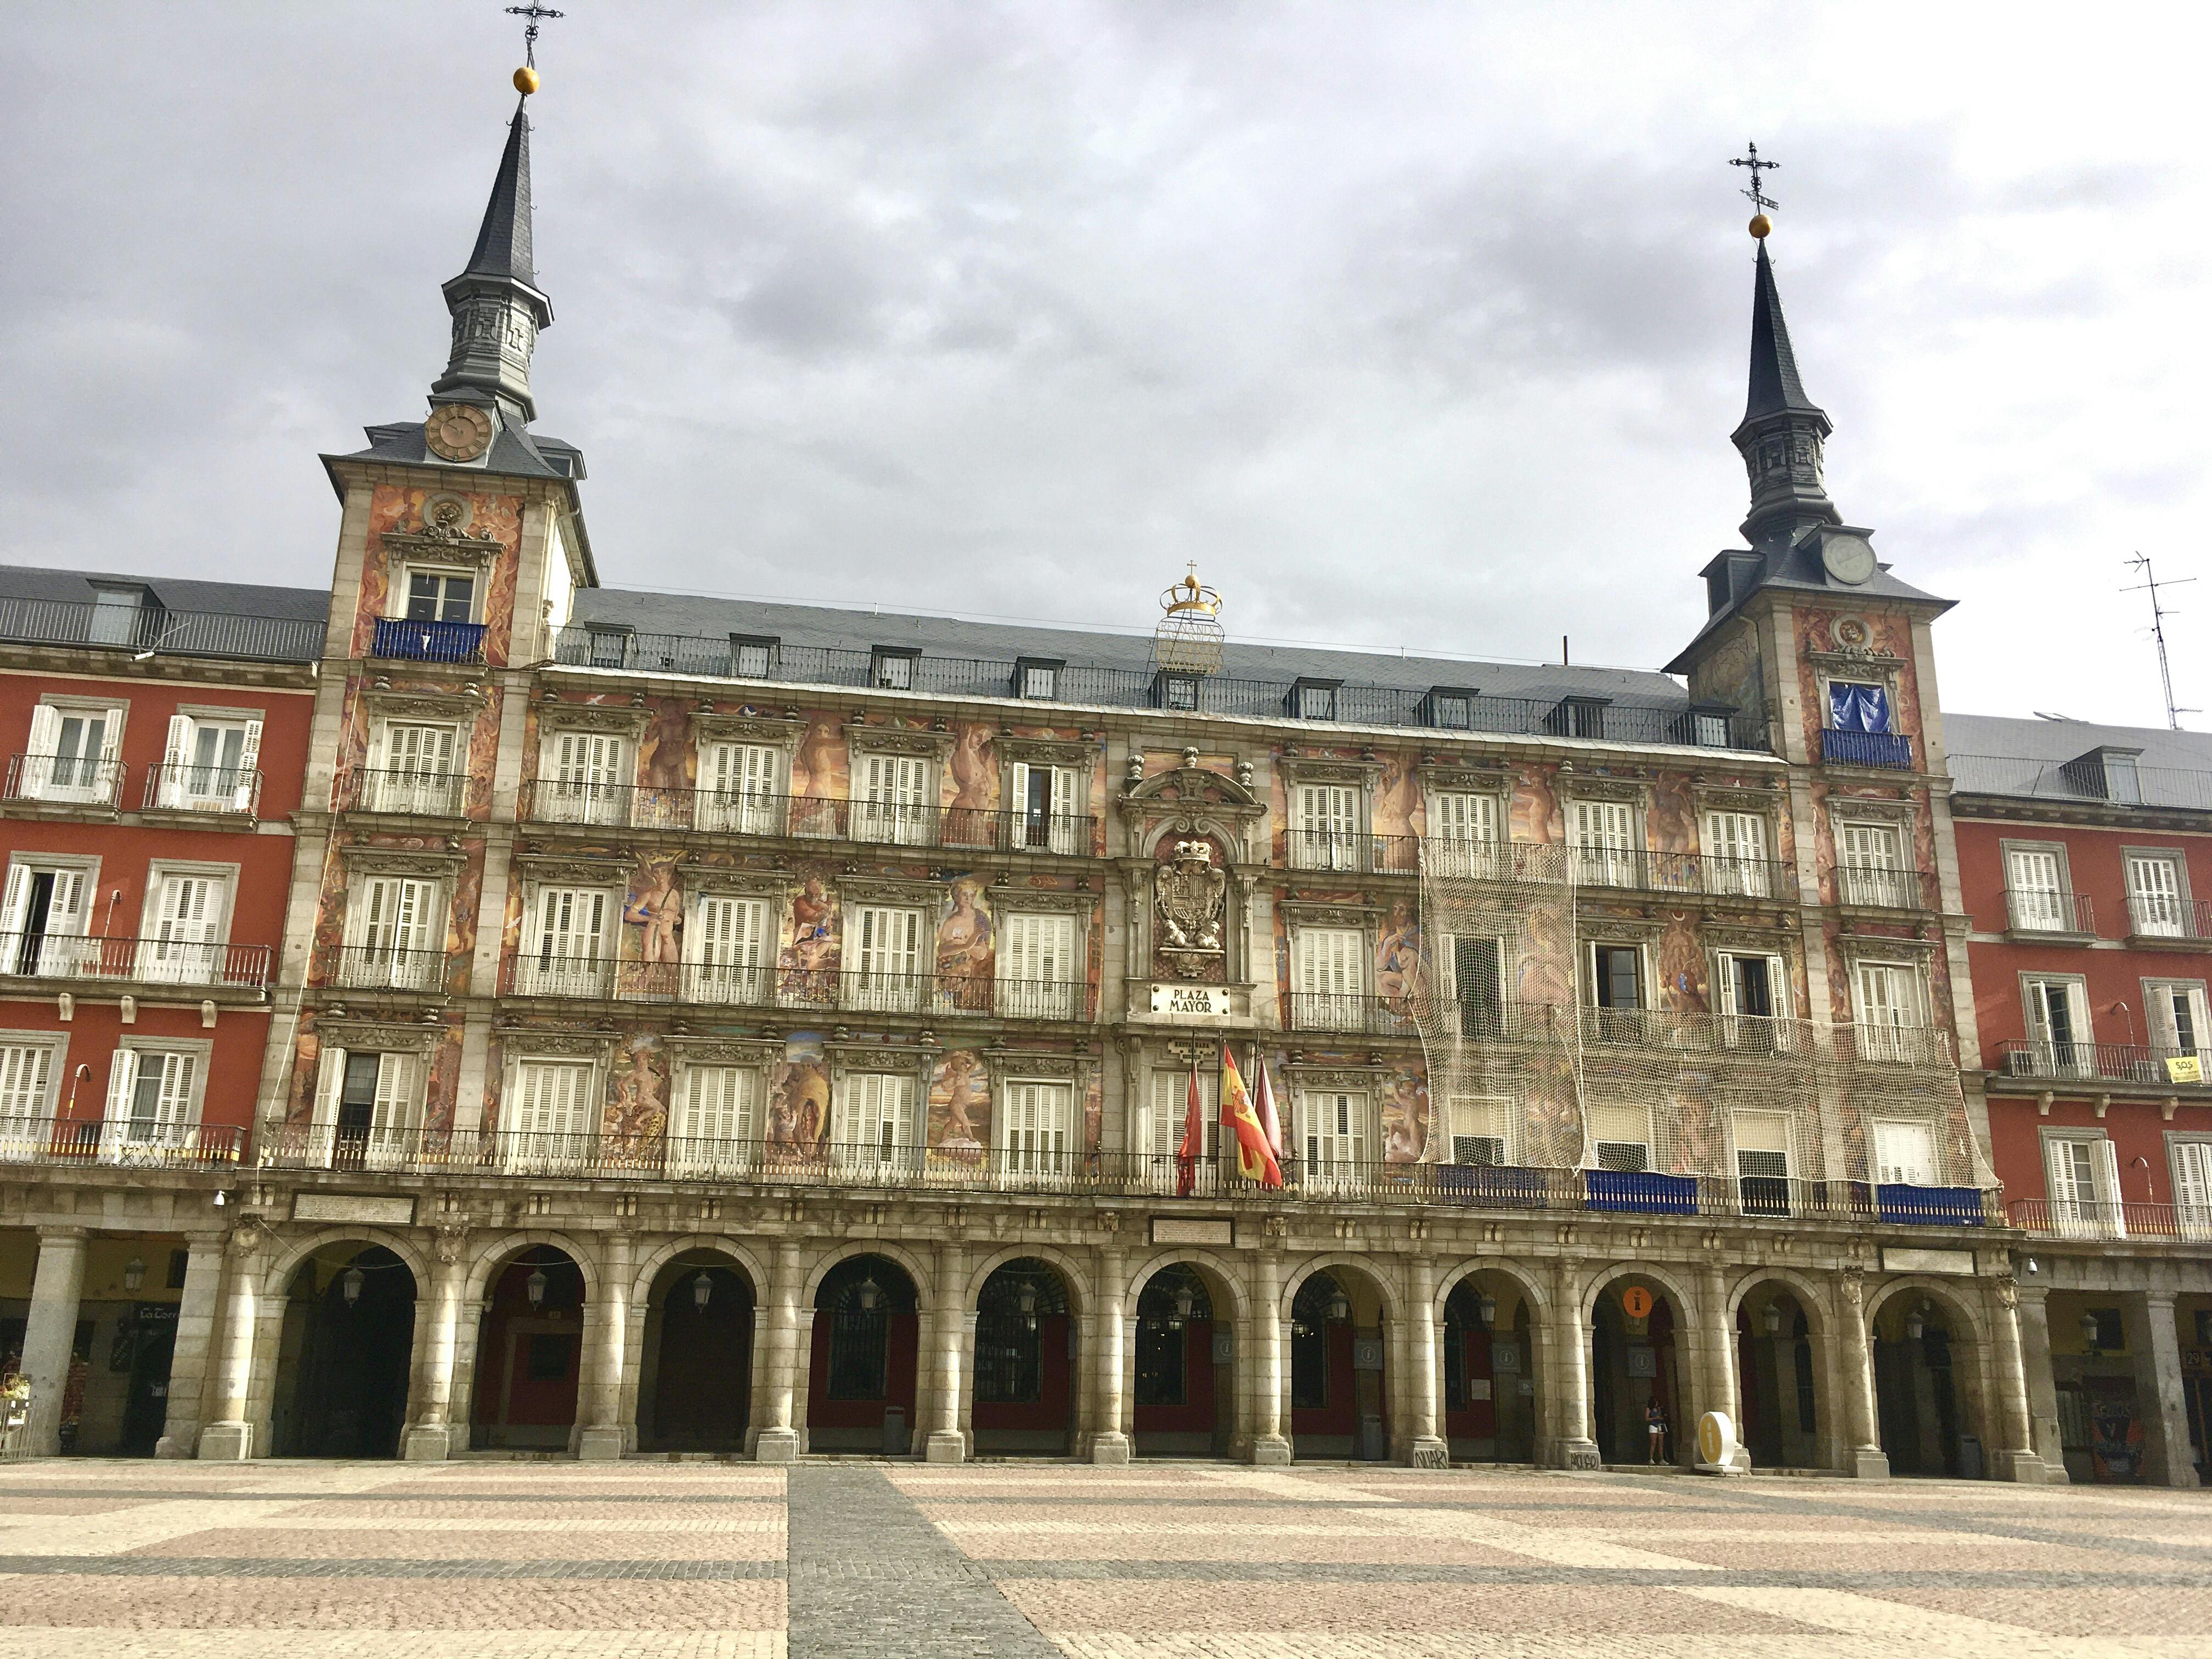 Jeu et visite de joyaux cachés et historiques du jeu d'exploration de Madrid